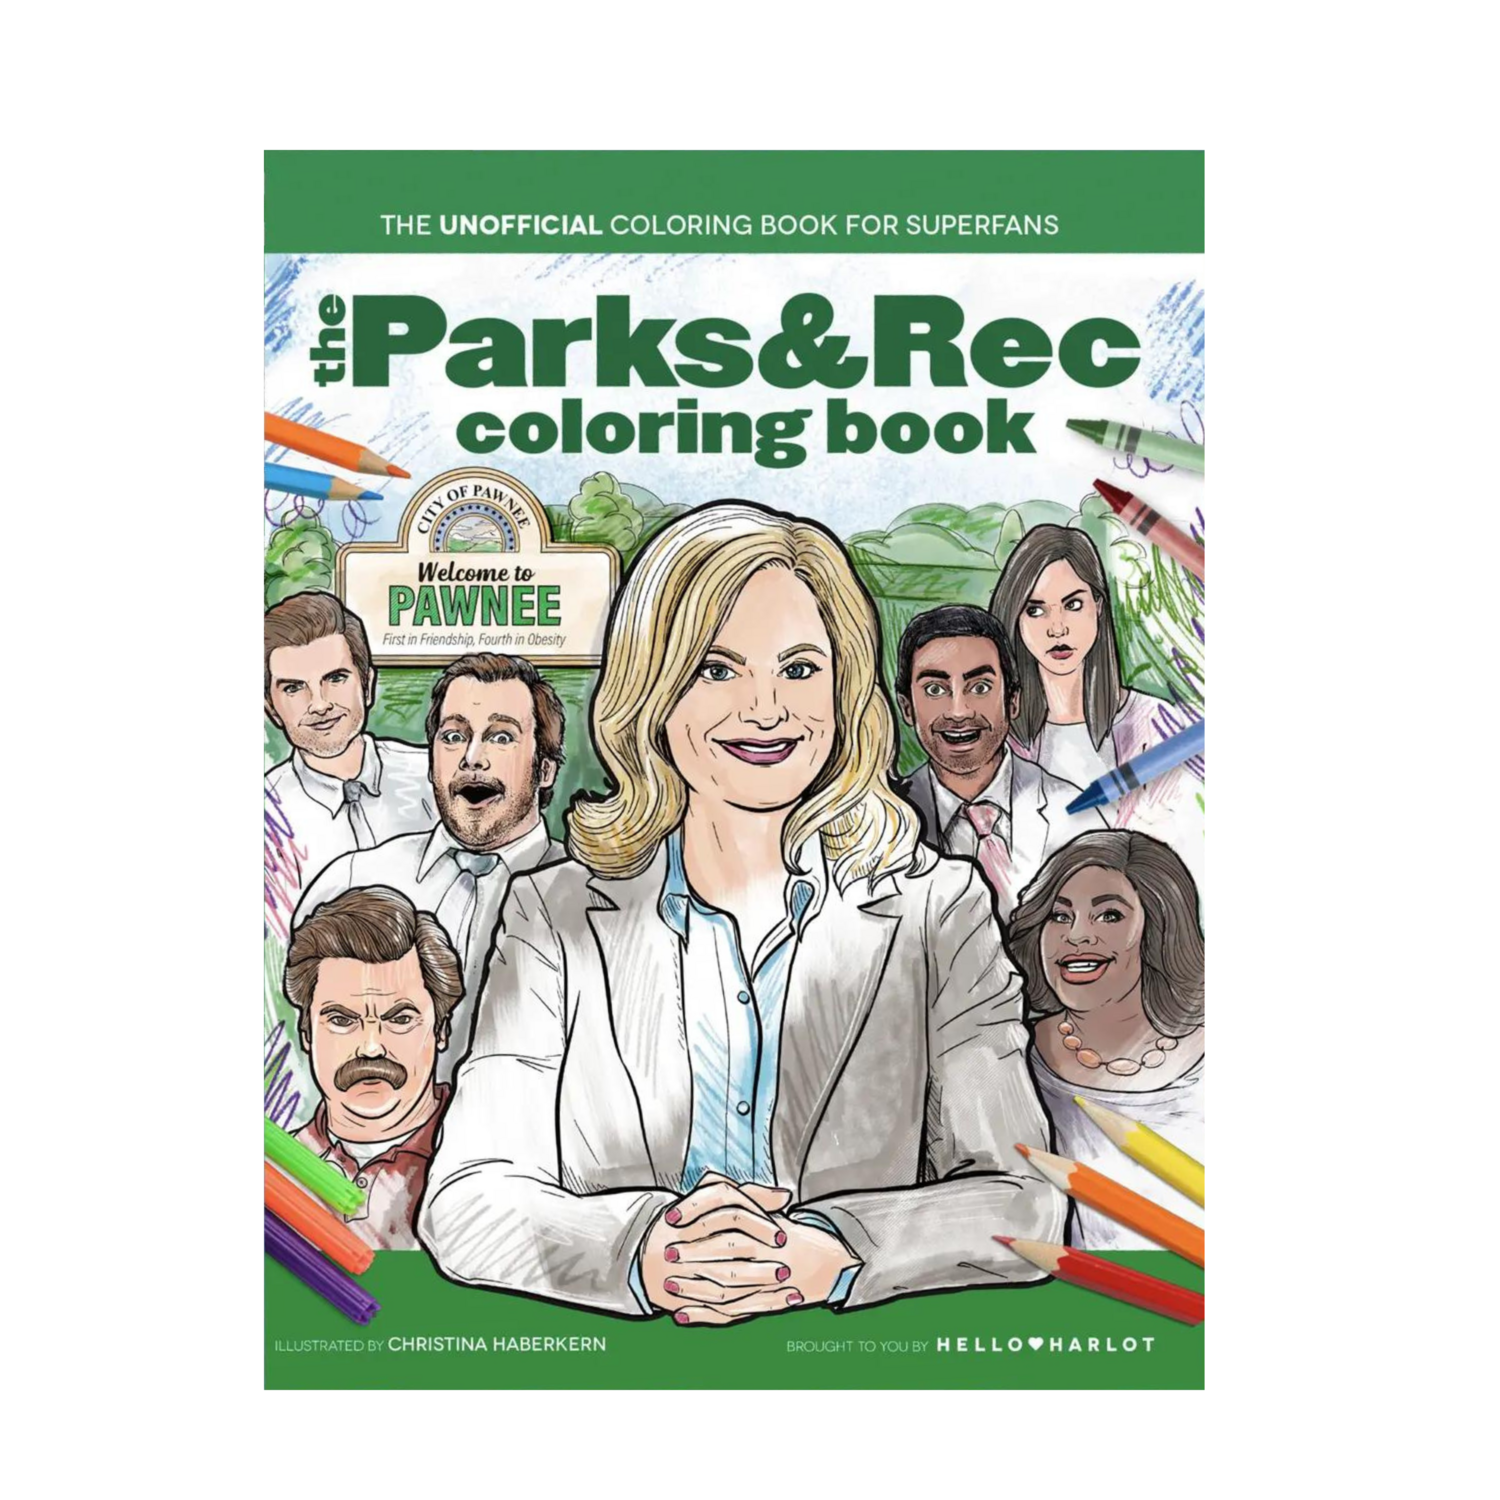 PARKS & REC COLORING BOOK